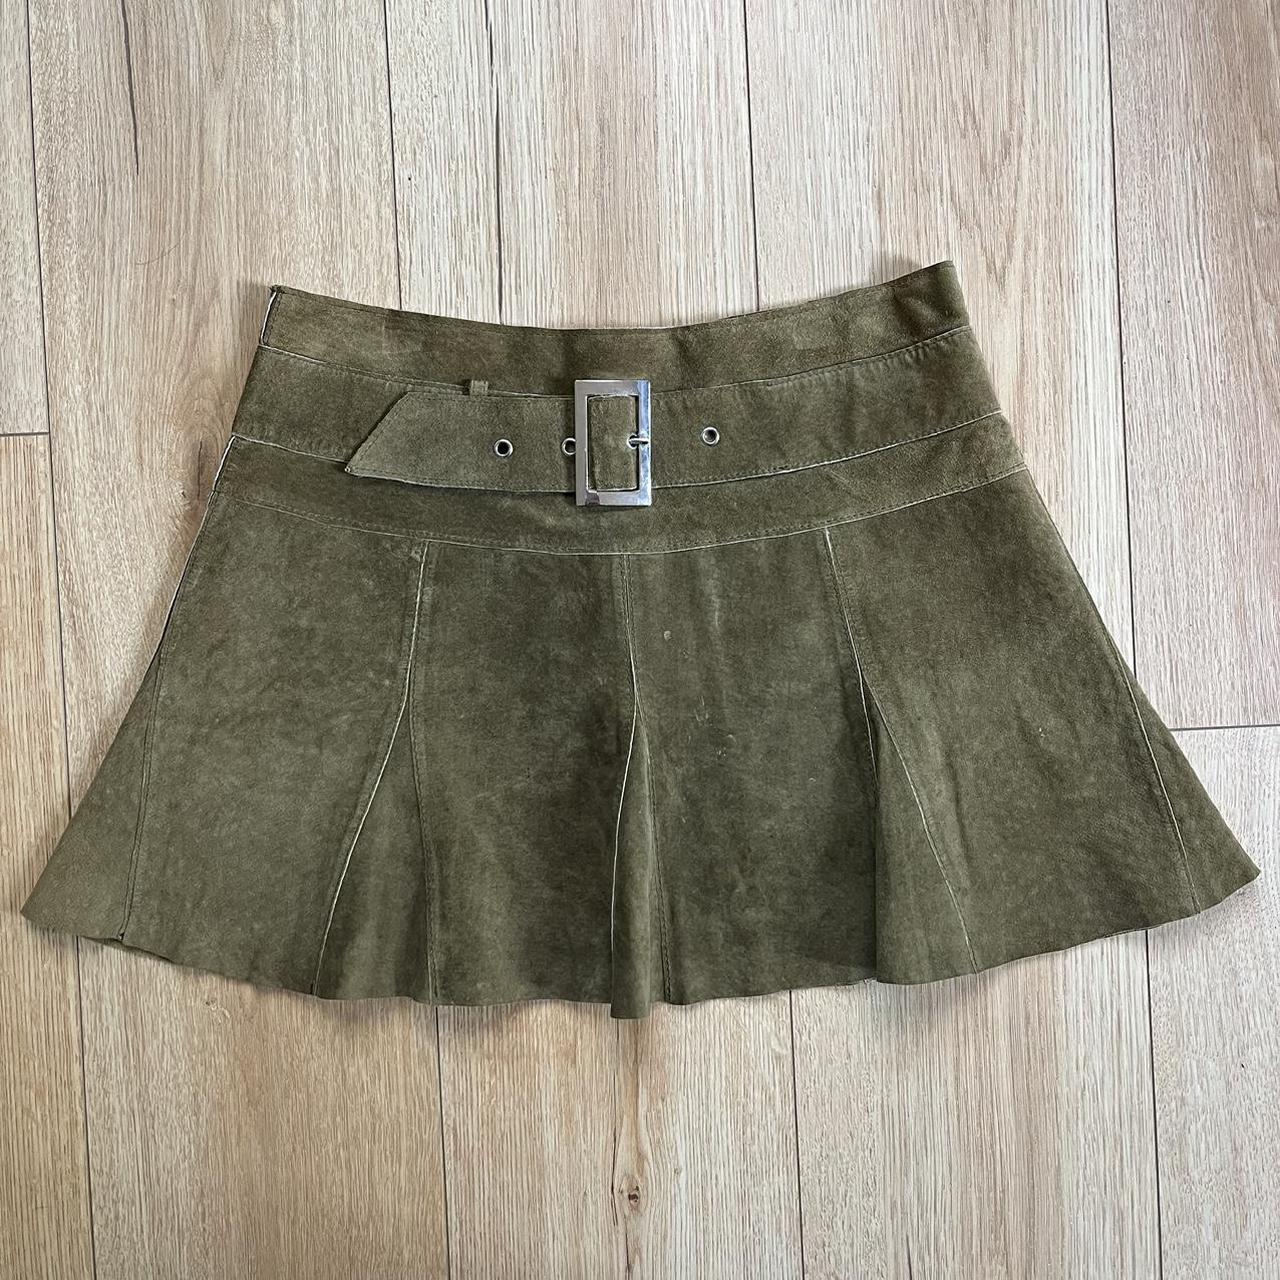 Bebe Women's Khaki and Green Skirt